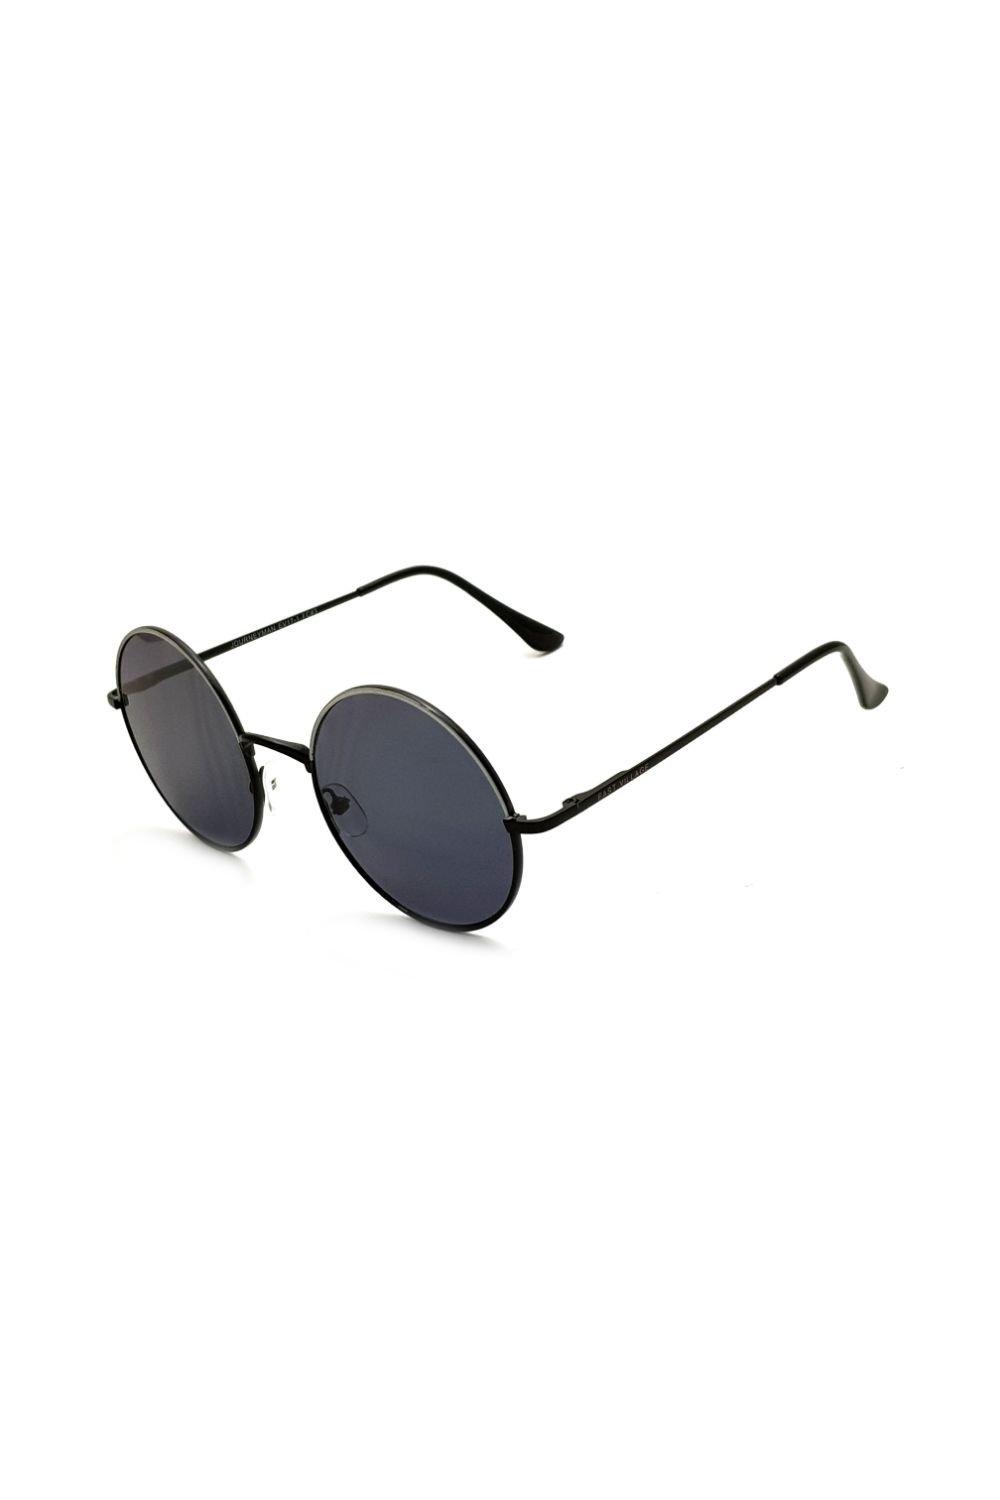 круглые солнцезащитные очки journeyman east village серебро Круглые солнцезащитные очки Journeyman East Village, черный